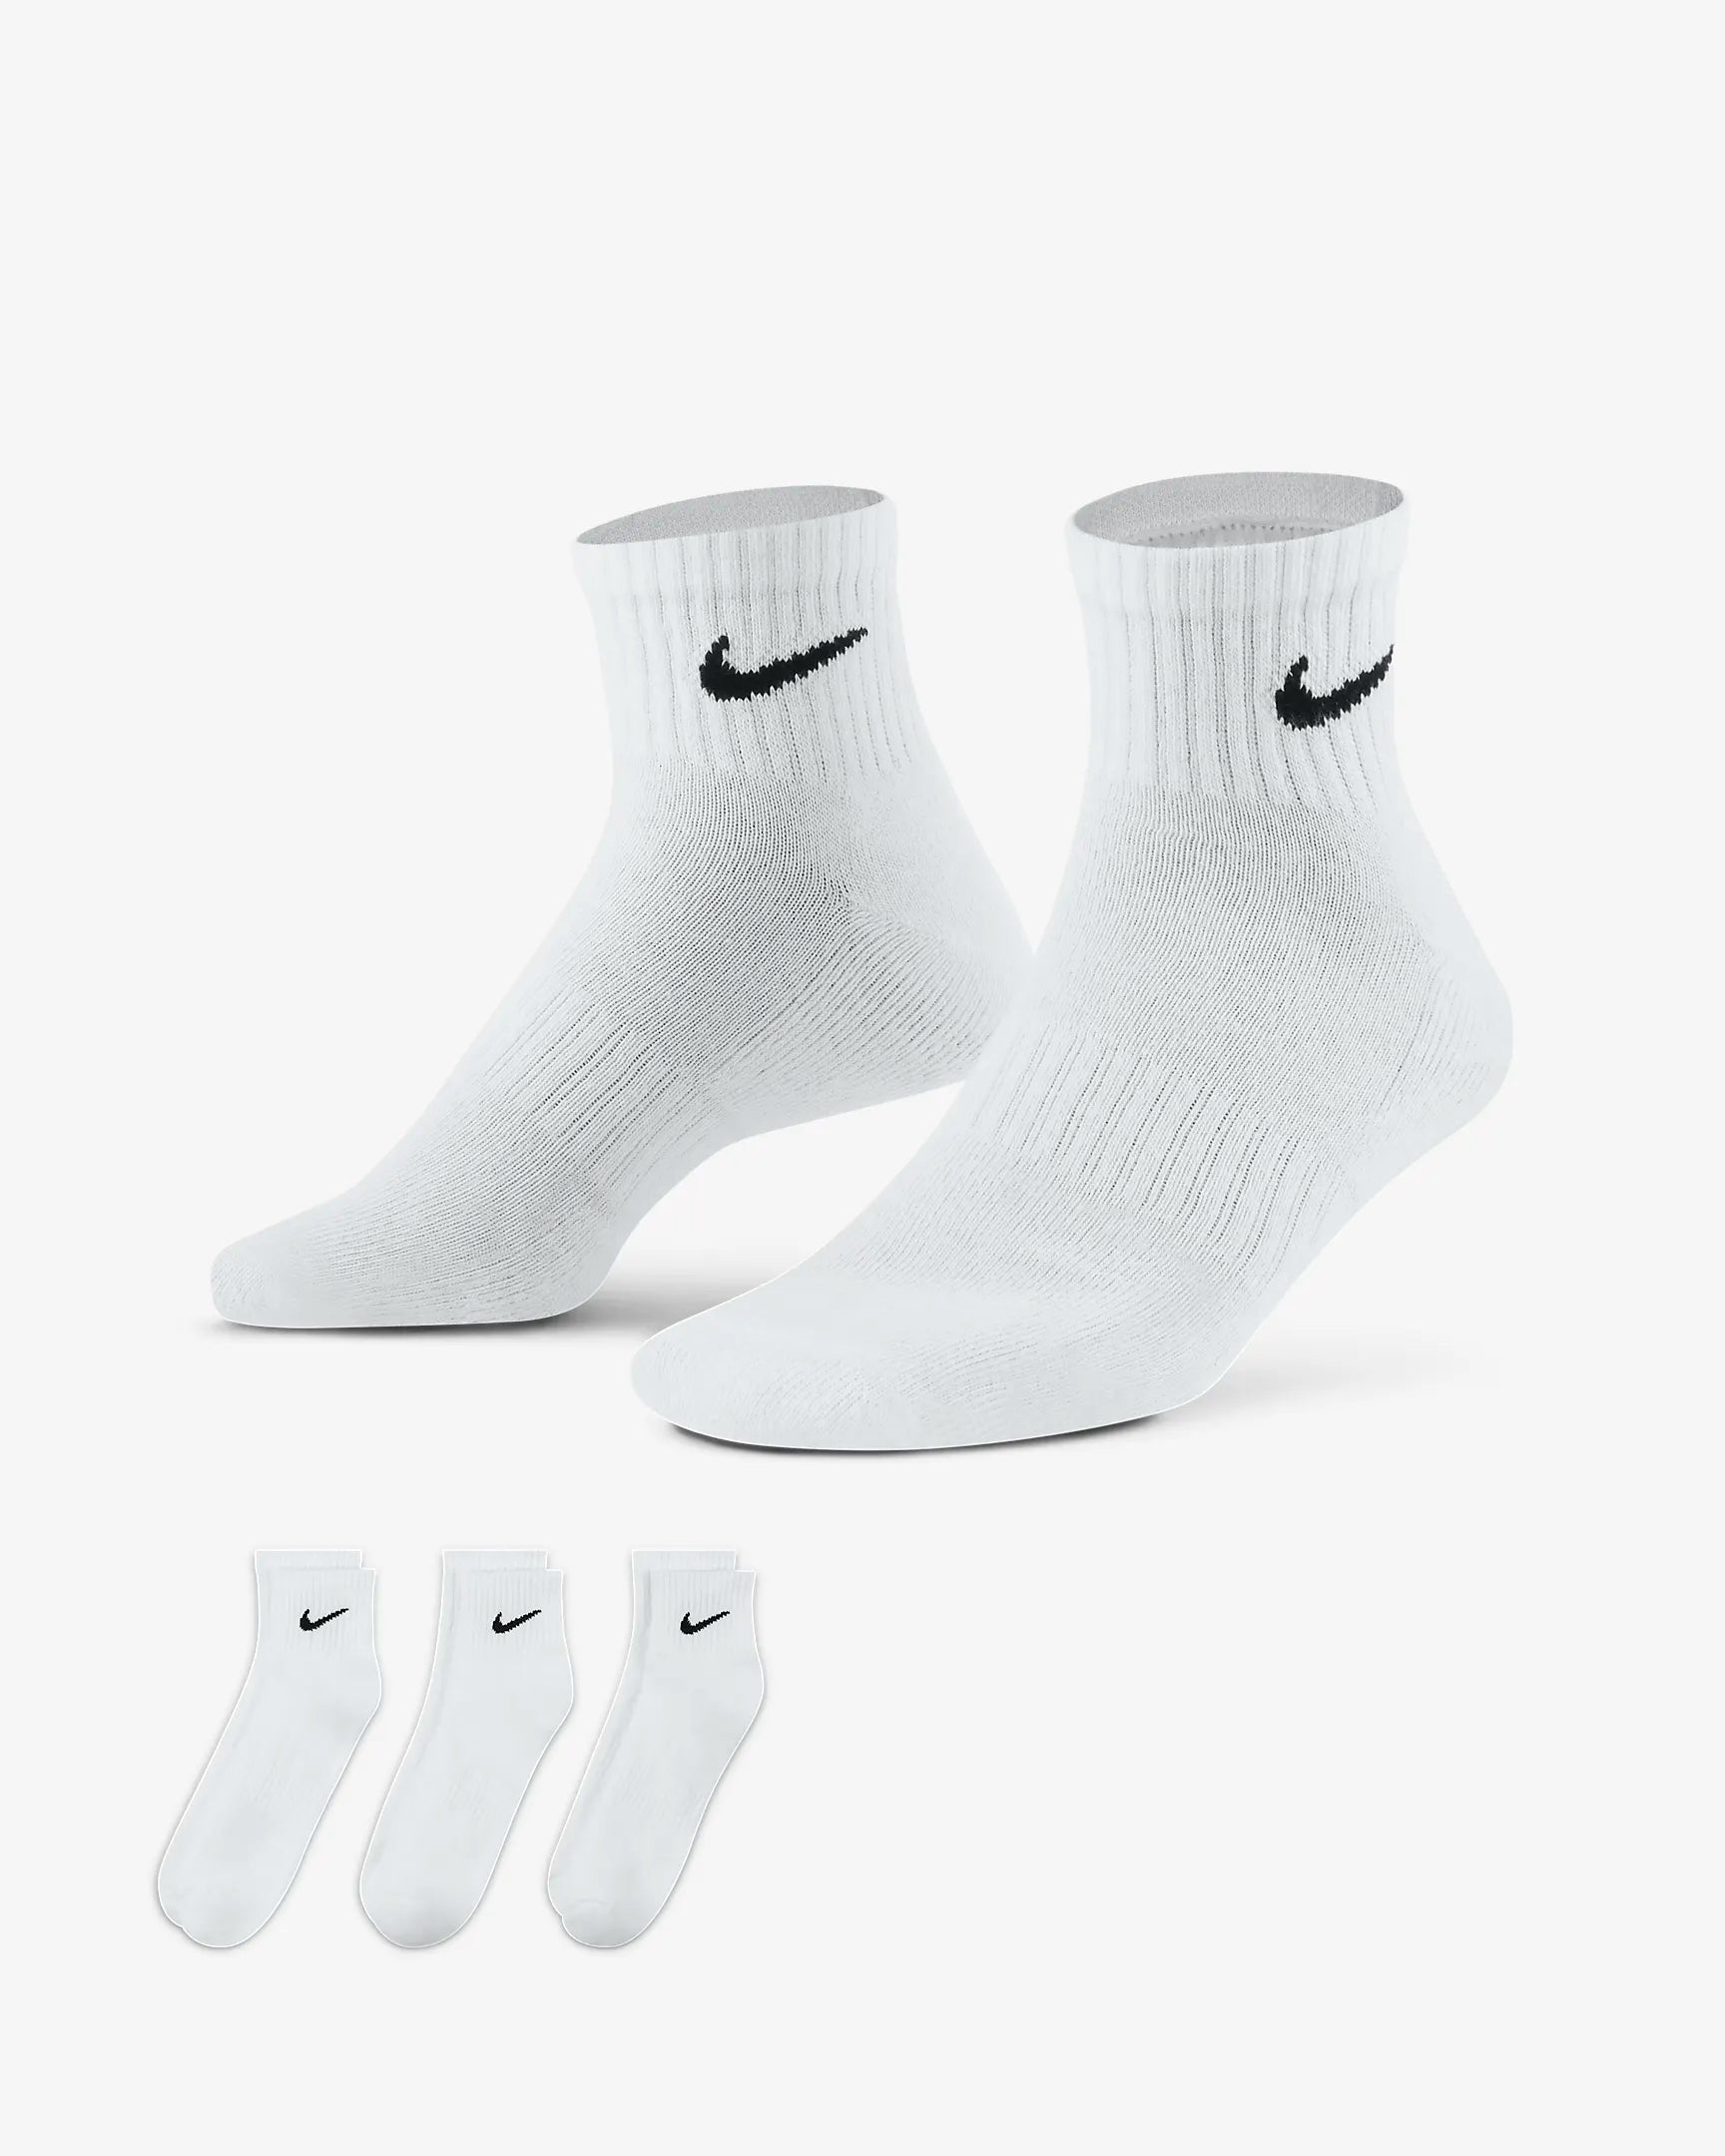 Pack 3 paires de chaussettes Nike basses blanc sur